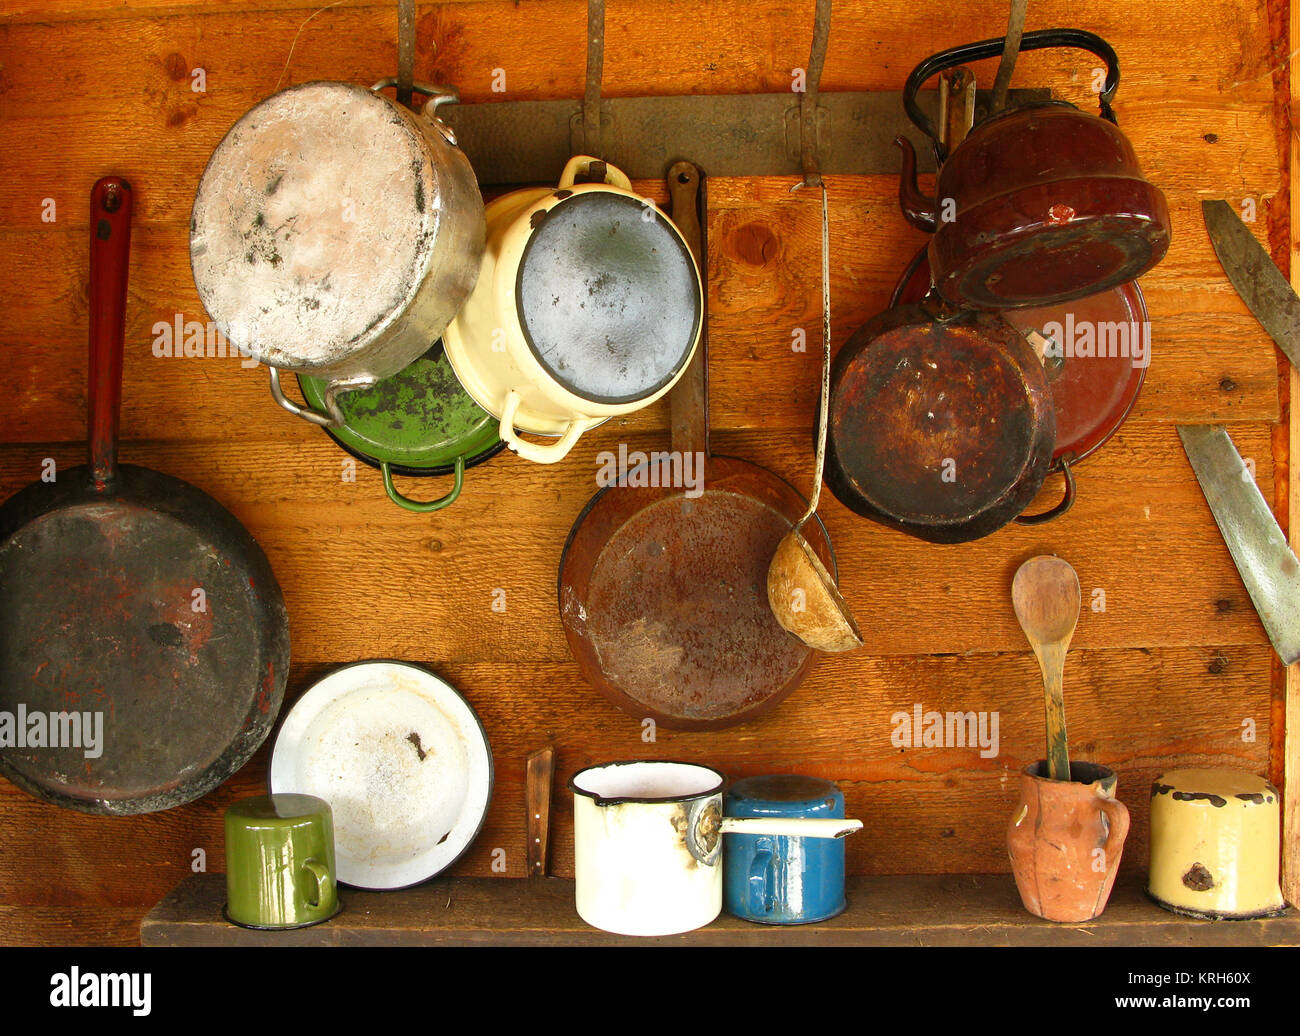 Alte Pfannen und Töpfen hängen an einer Holzwand Stockfotografie - Alamy